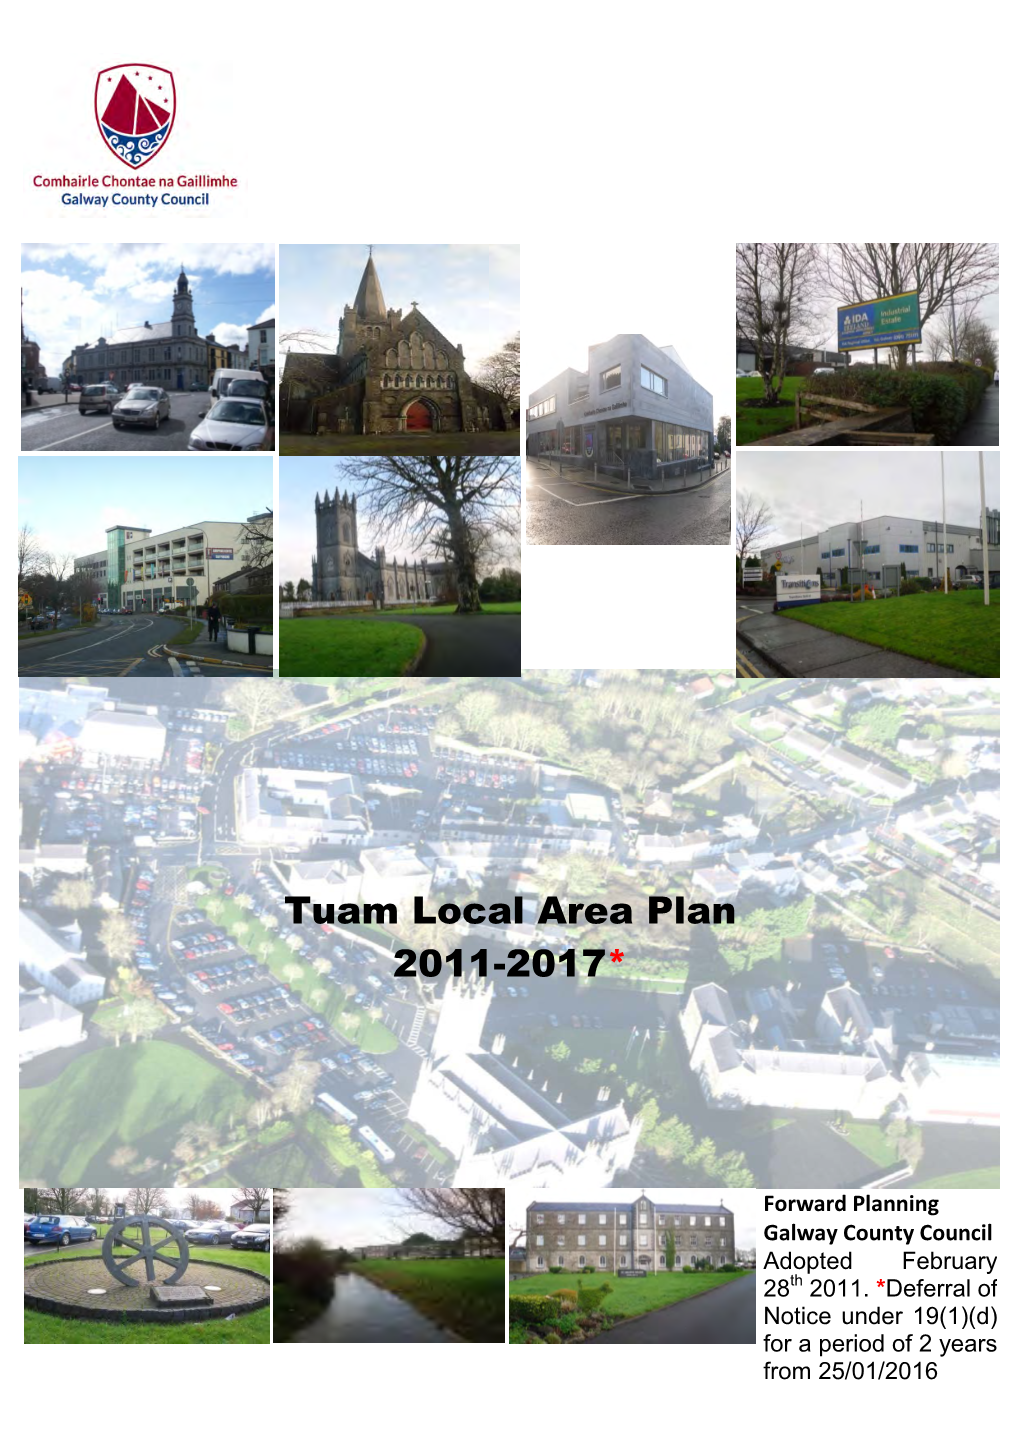 Tuam Local Area Plan 2011-2017*